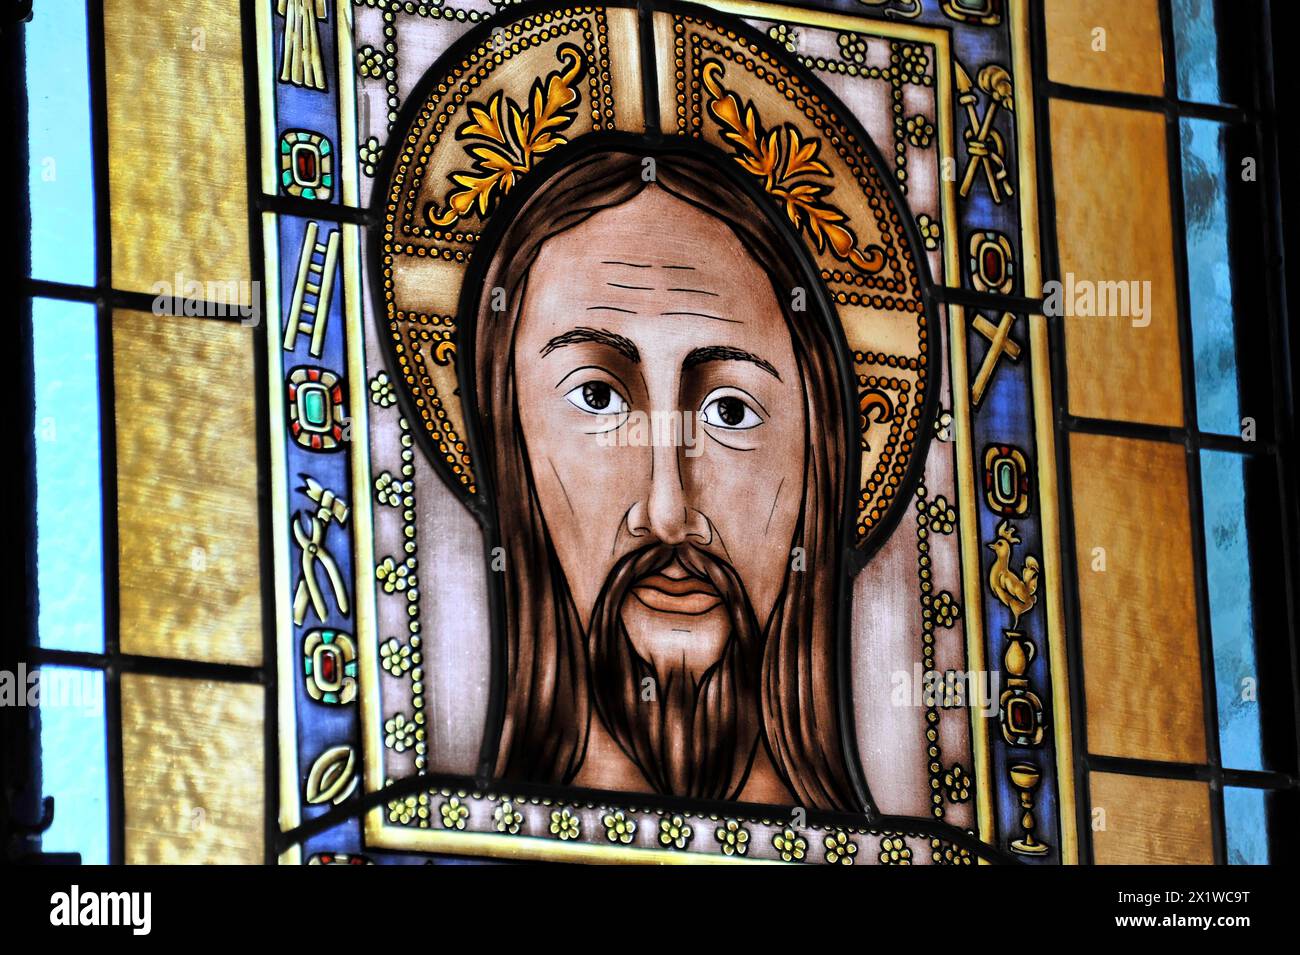 Castillo de Santa Catalina à Jaen, vitrail montrant Jésus avec une expression faciale sérieuse et des décorations symboliques, Grenade Banque D'Images